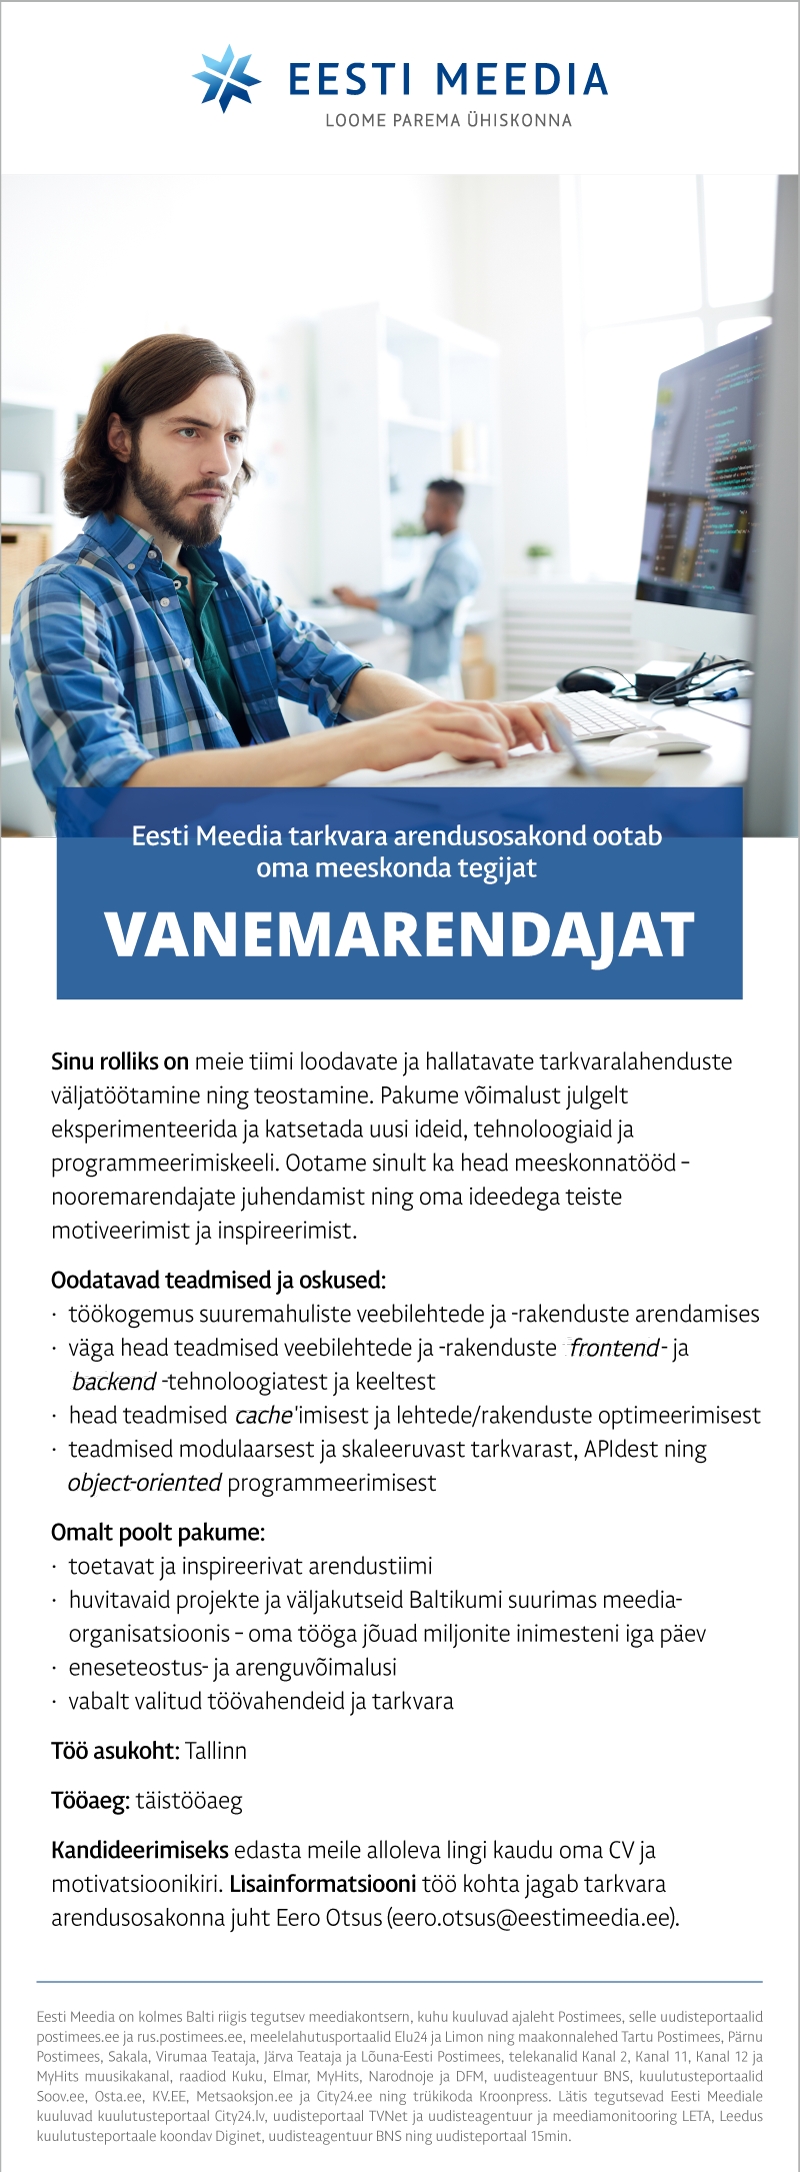 Eesti Meedia Vanemarendaja